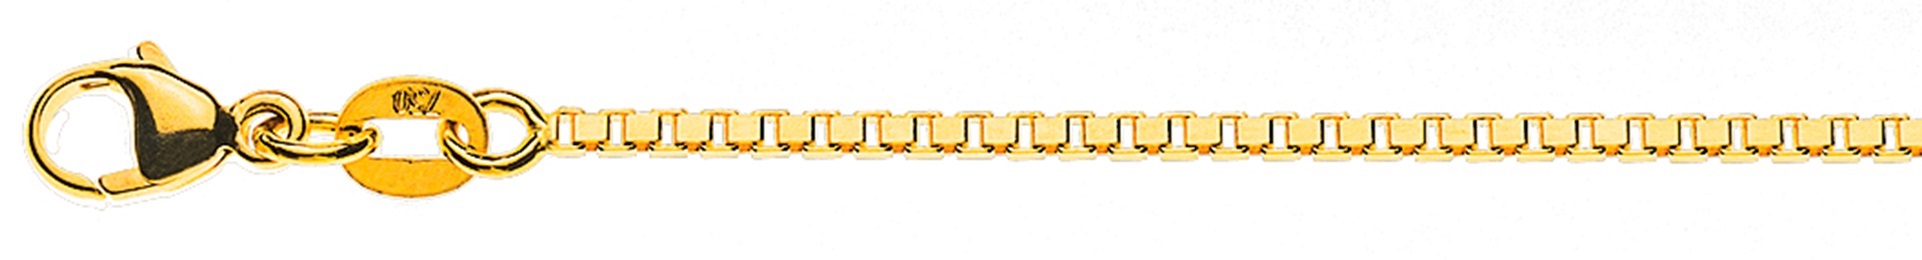 AURONOS Style Halskette Gelbgold 9K Venezianerkette diamantiert 55cm 1.4mm